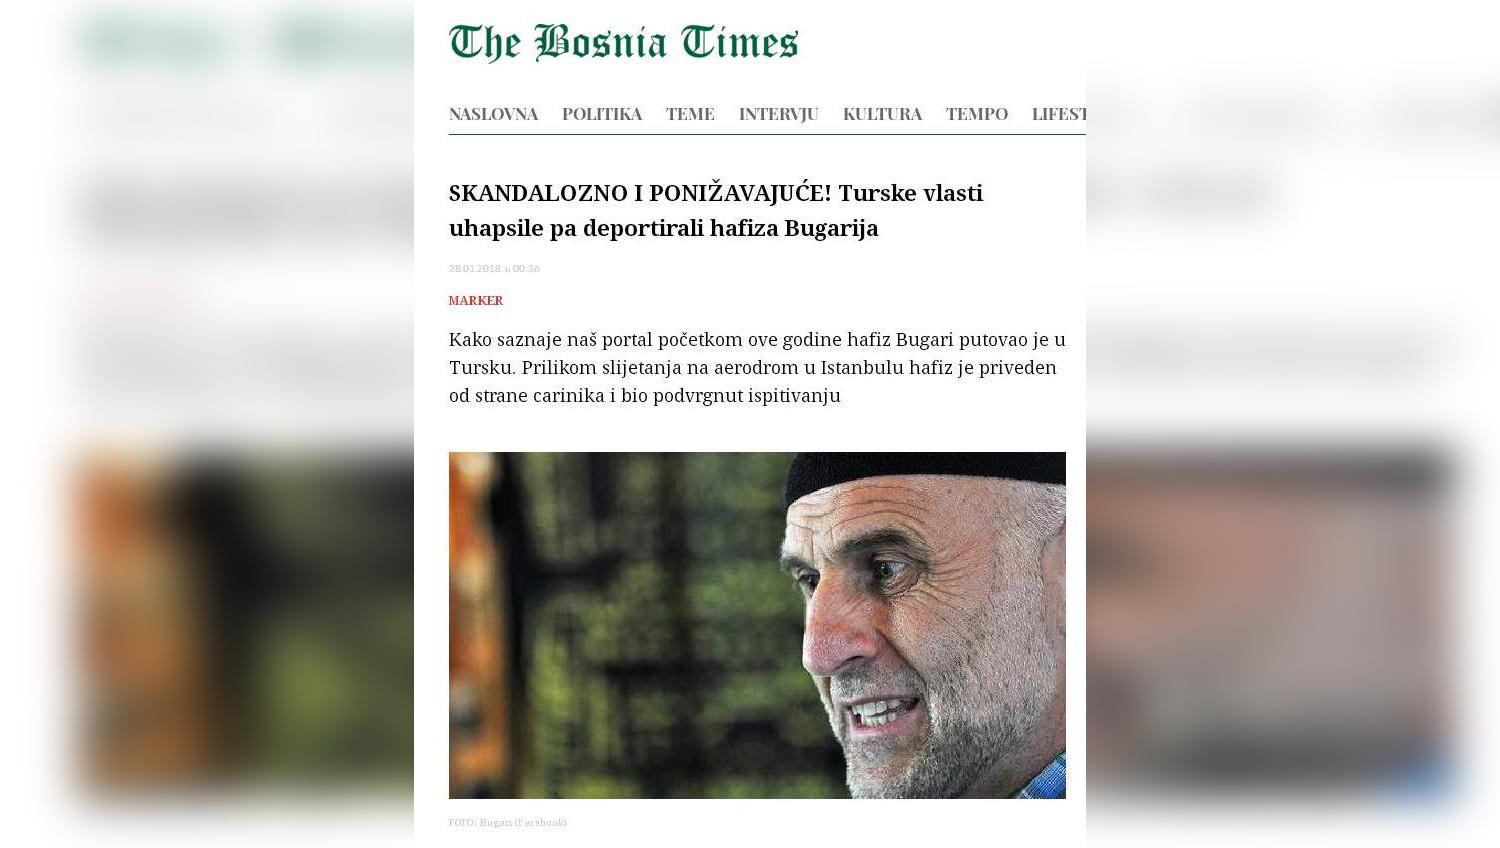 "The Bosnia Times" piše da je ugledni islamski učenjak doživio neprijatnost: Hafiz Bugari uhapšen u Turskoj pa vraćen u Podgoricu